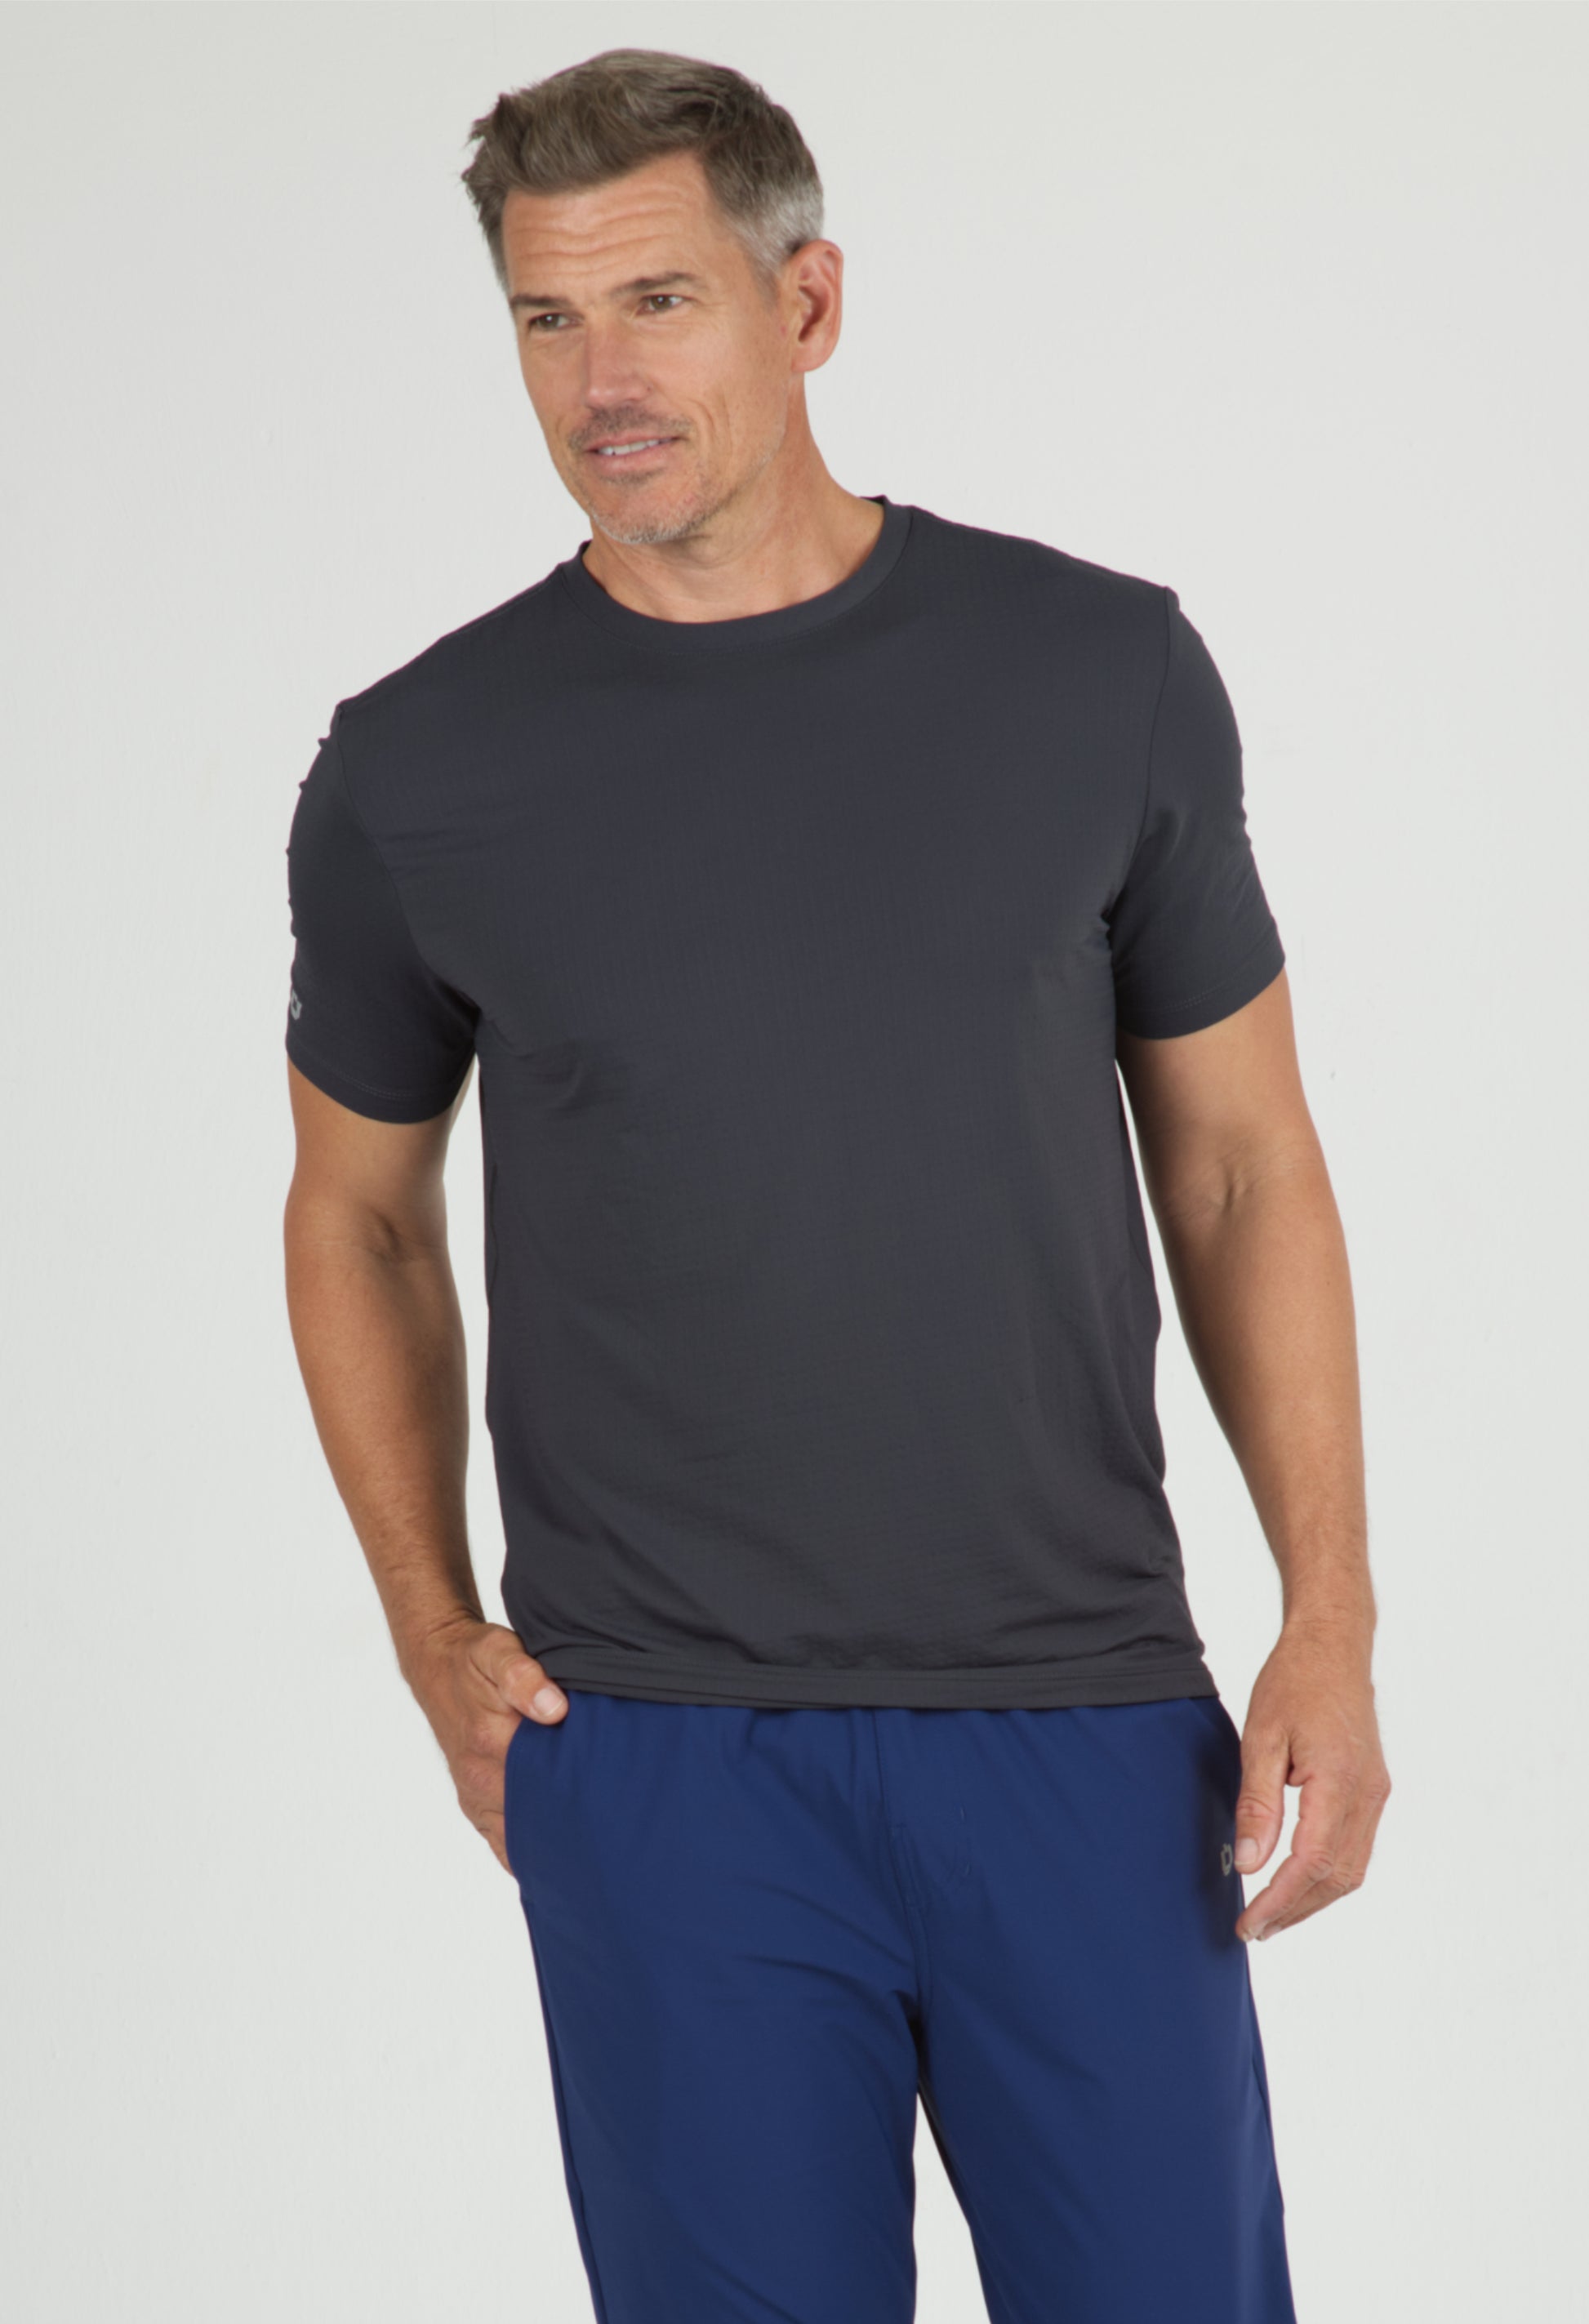 IBKÜL - Short Sleeve Crewneck T-Shirt - 92199 (Modern Fit) - Color: Black